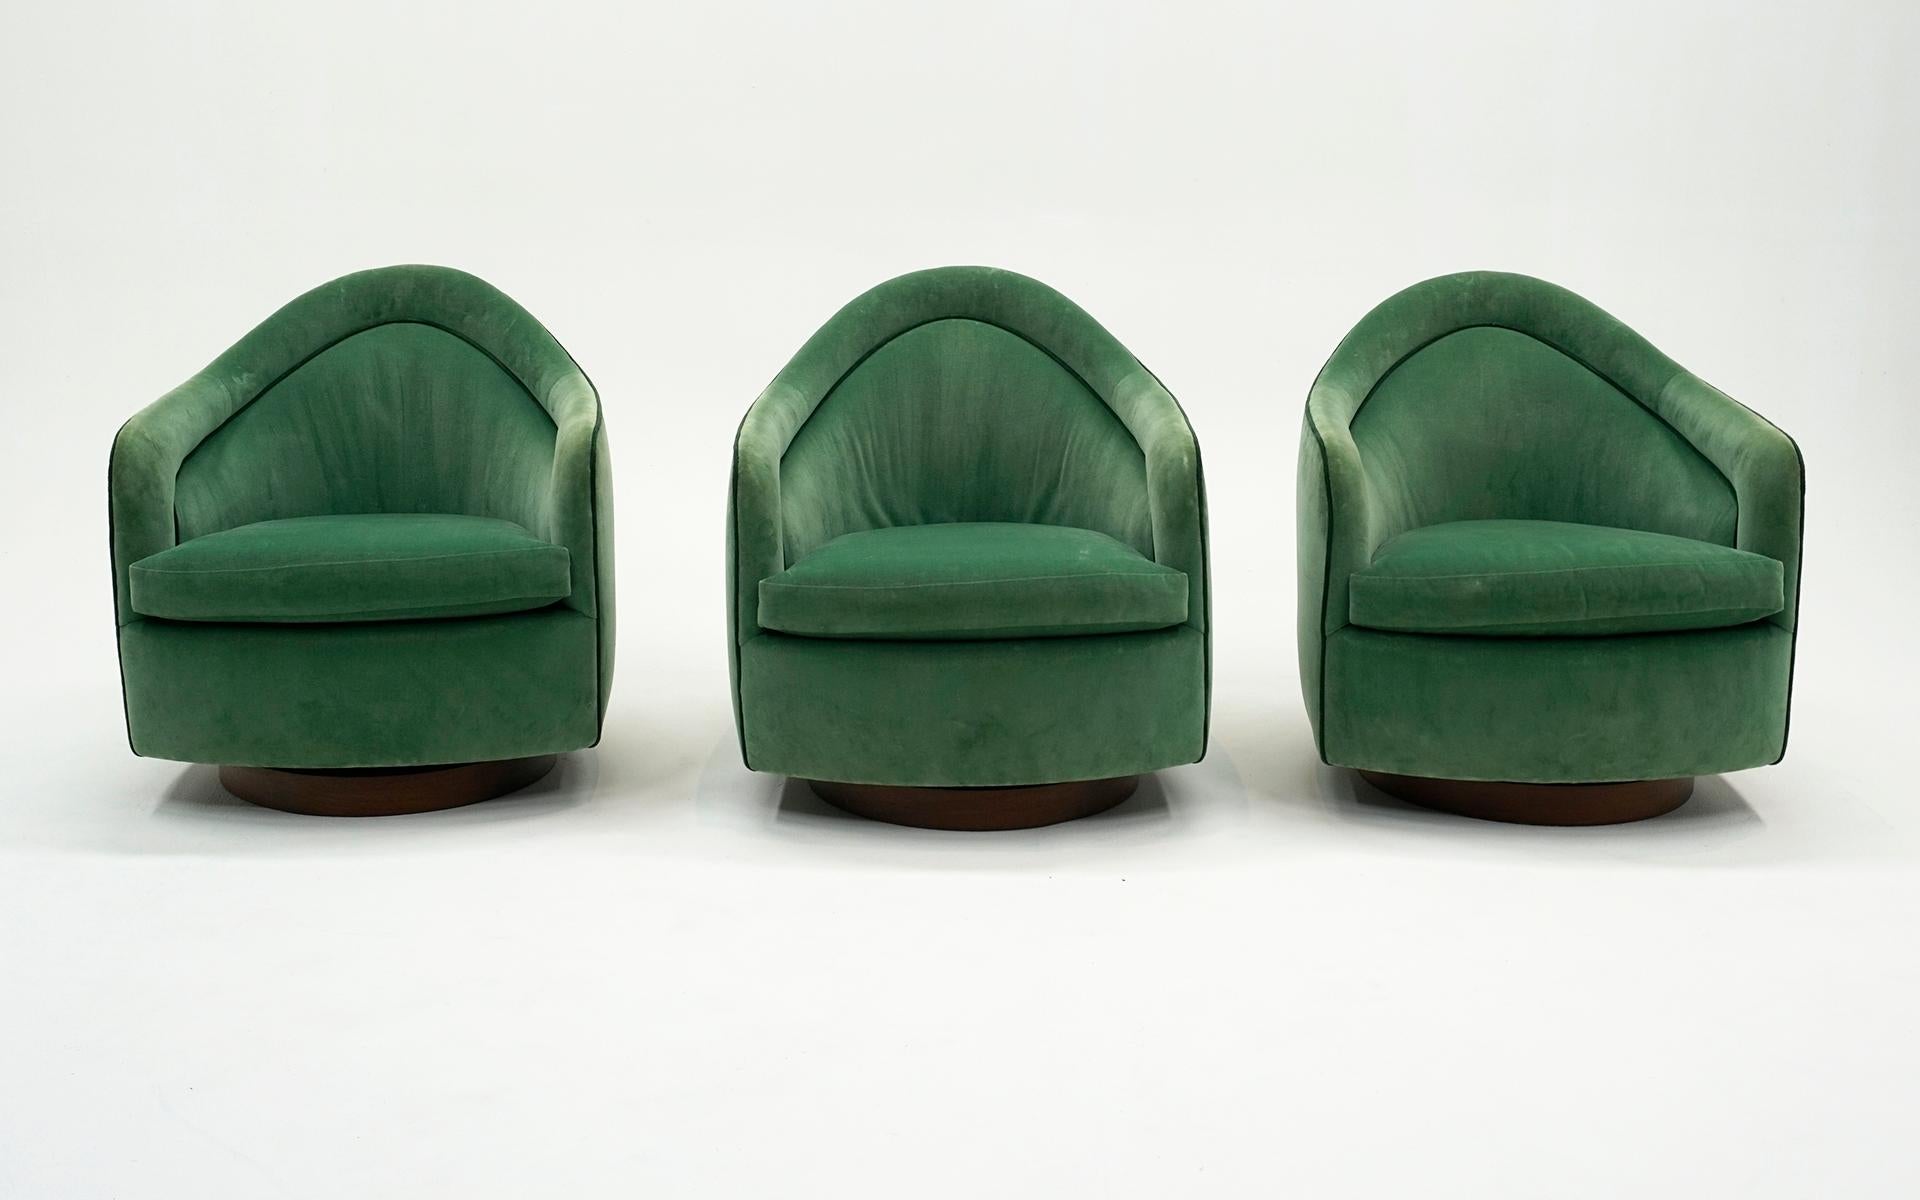 Sechs Milo Baughman. Hochlehnige, neigbare und drehbare Loungesessel. New Green Polstermöbel. (Moderne der Mitte des Jahrhunderts)